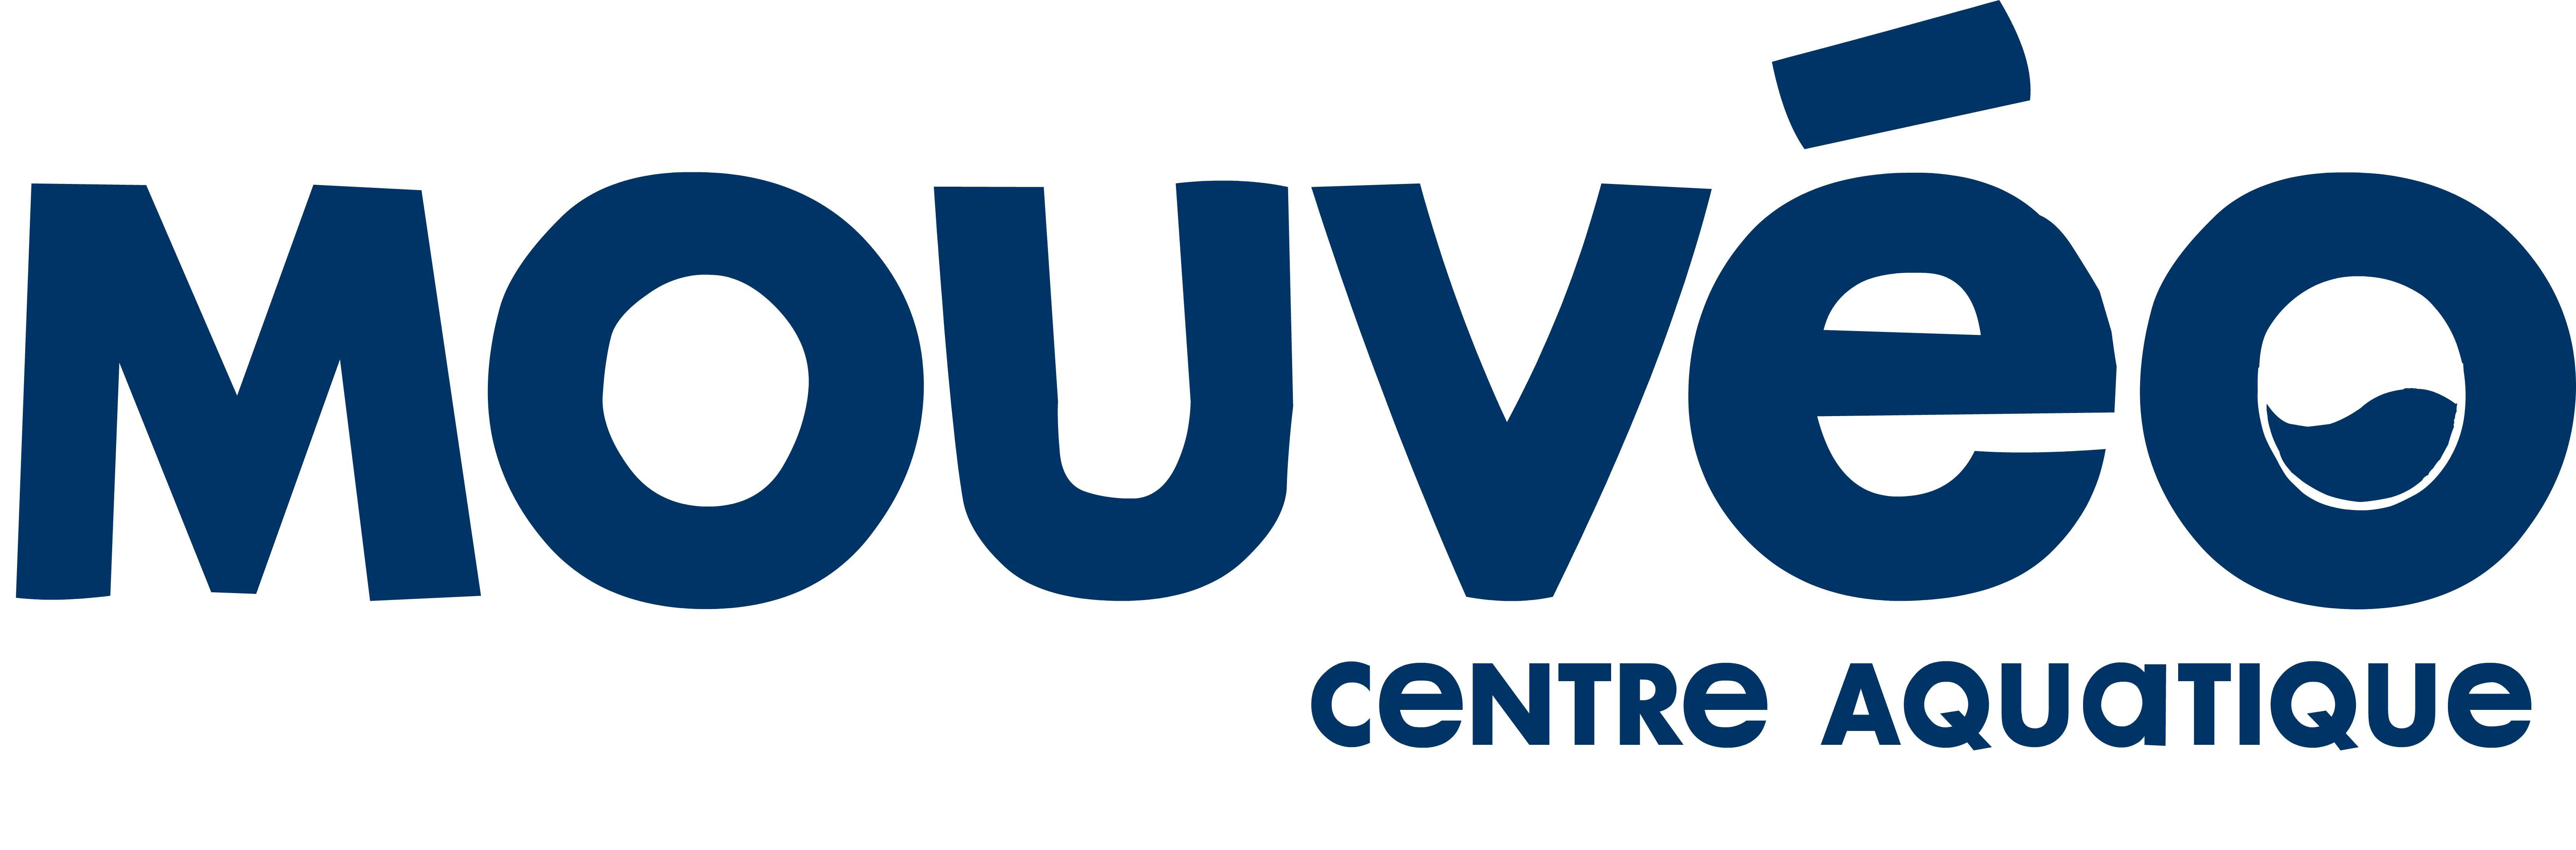 MOUVEO Centre Aquatique